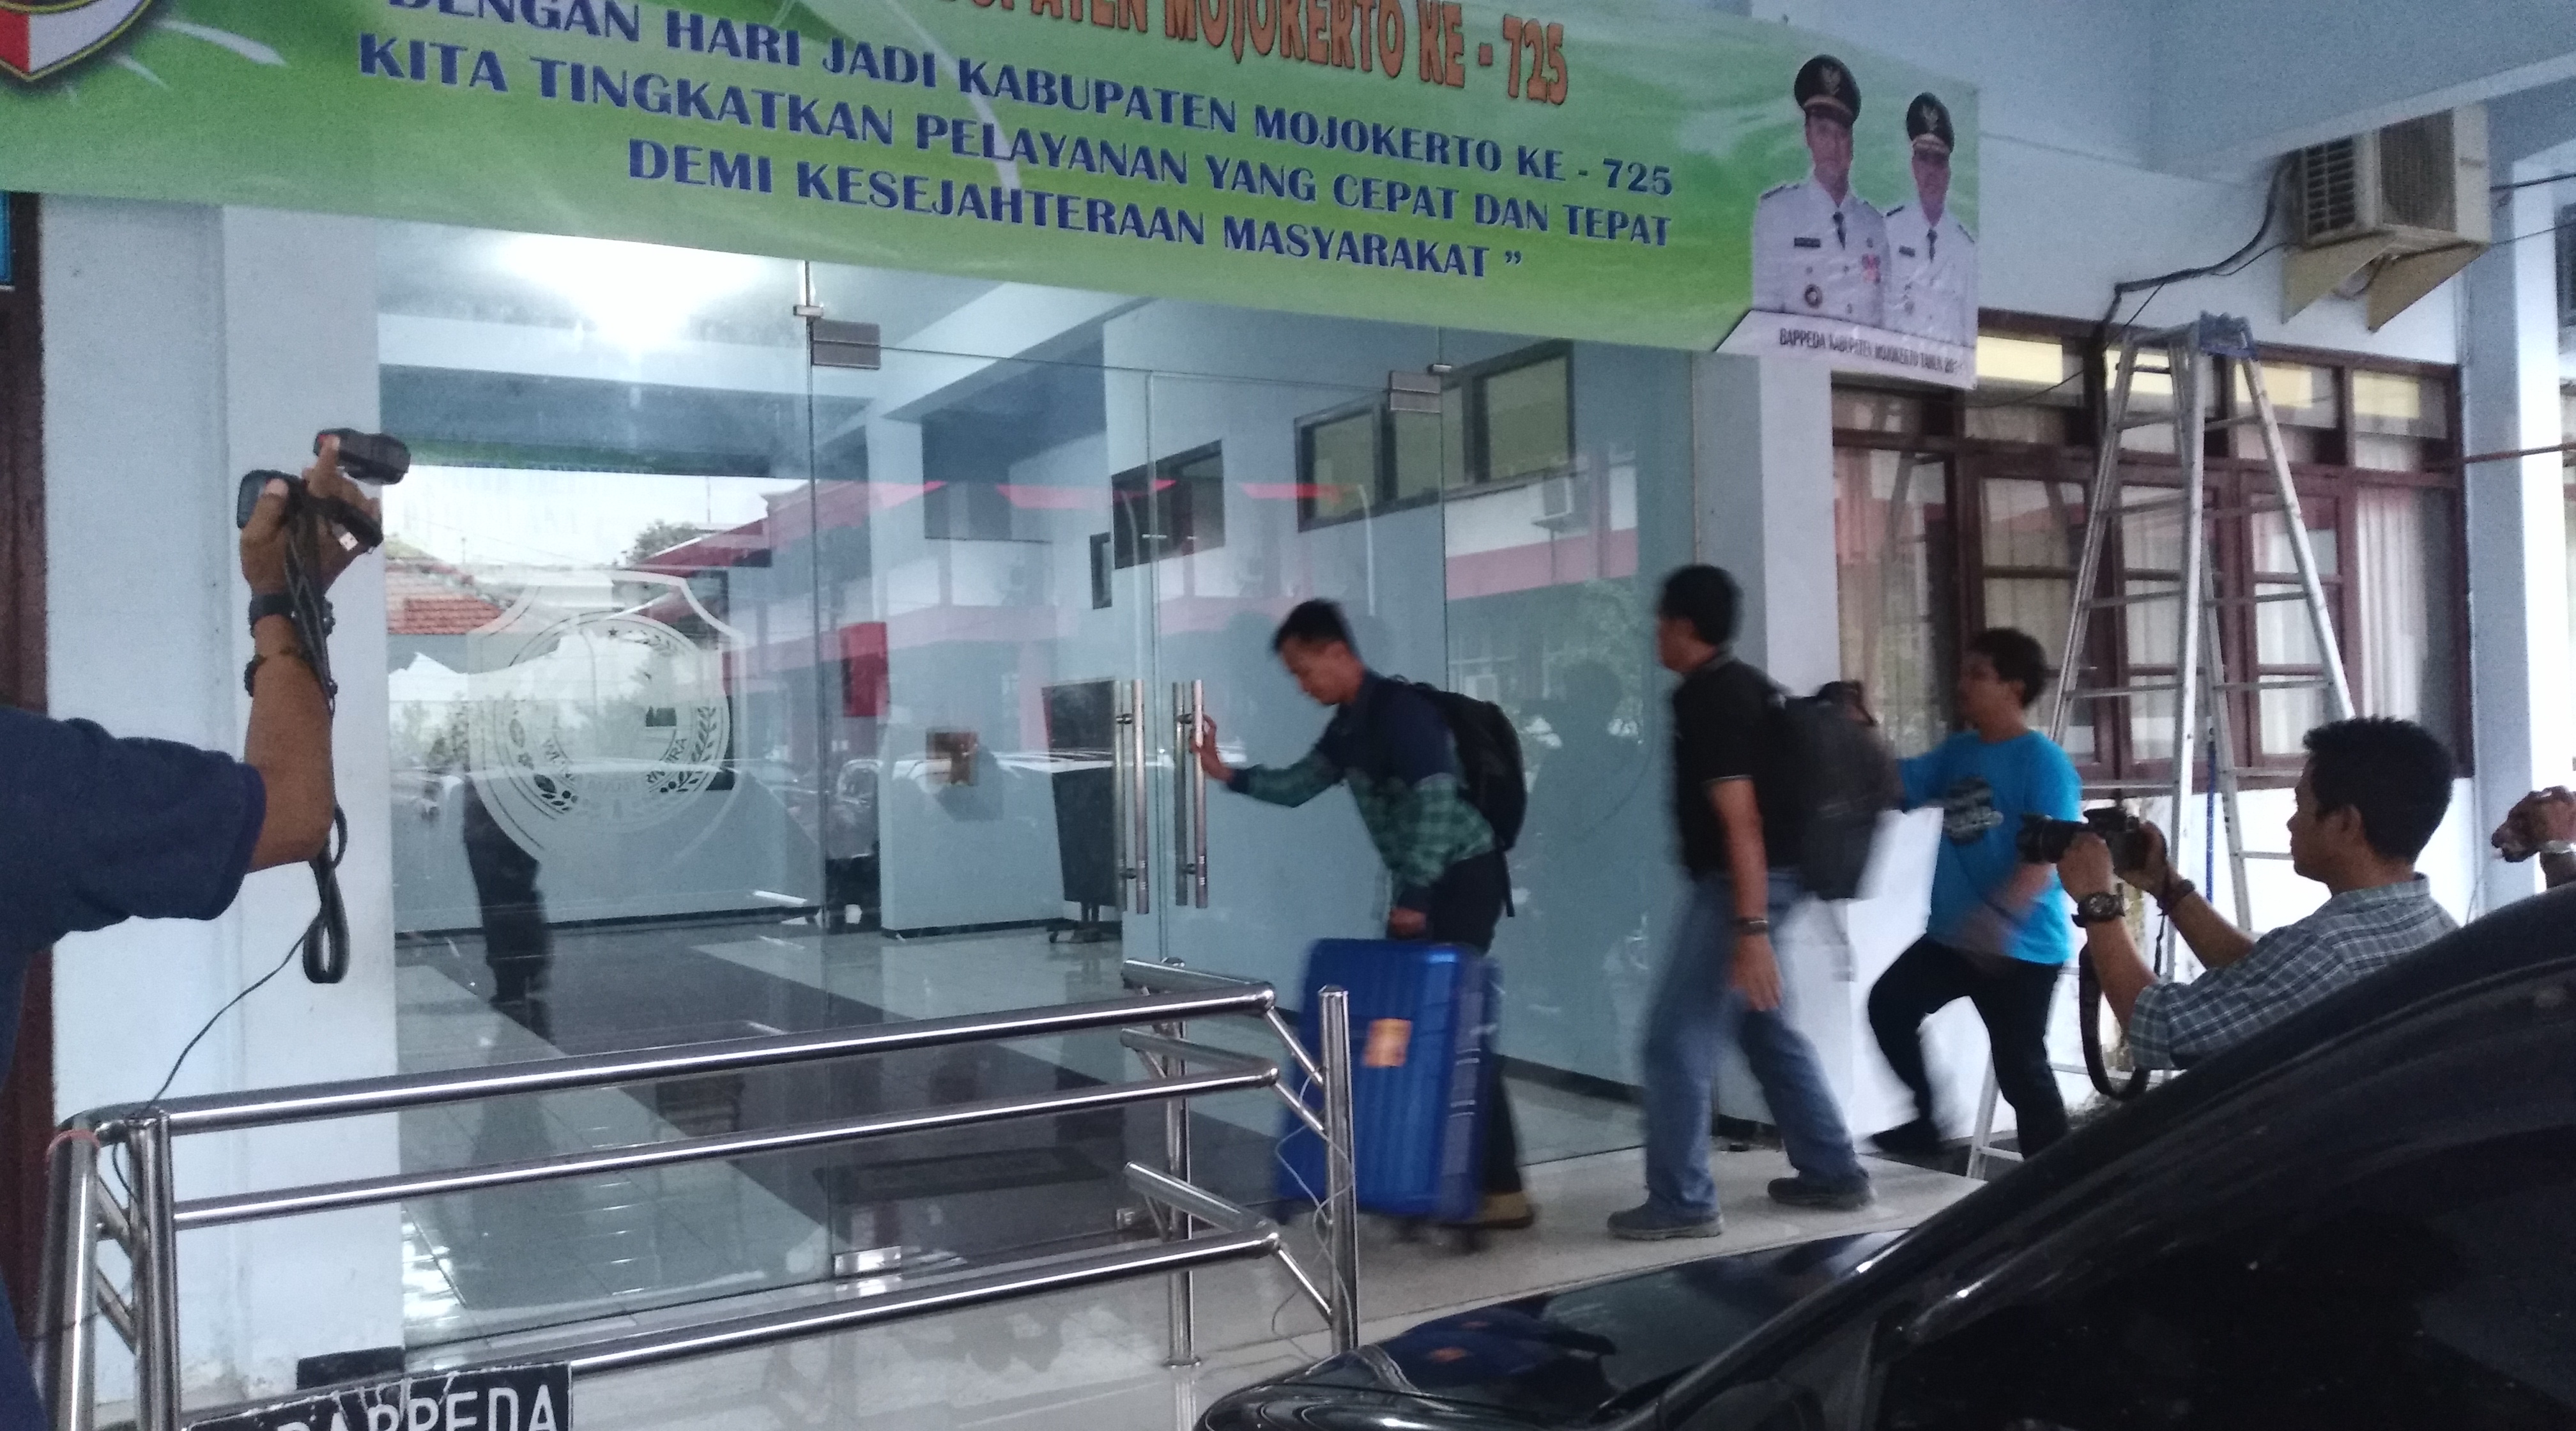 Seorang oenyidik KPK membawa koper besar berwarna biru ke dalam gedung Bappeda Mojokerto, Selasa, 24 April 2018. (Foto: frd/ngopibareng.id)